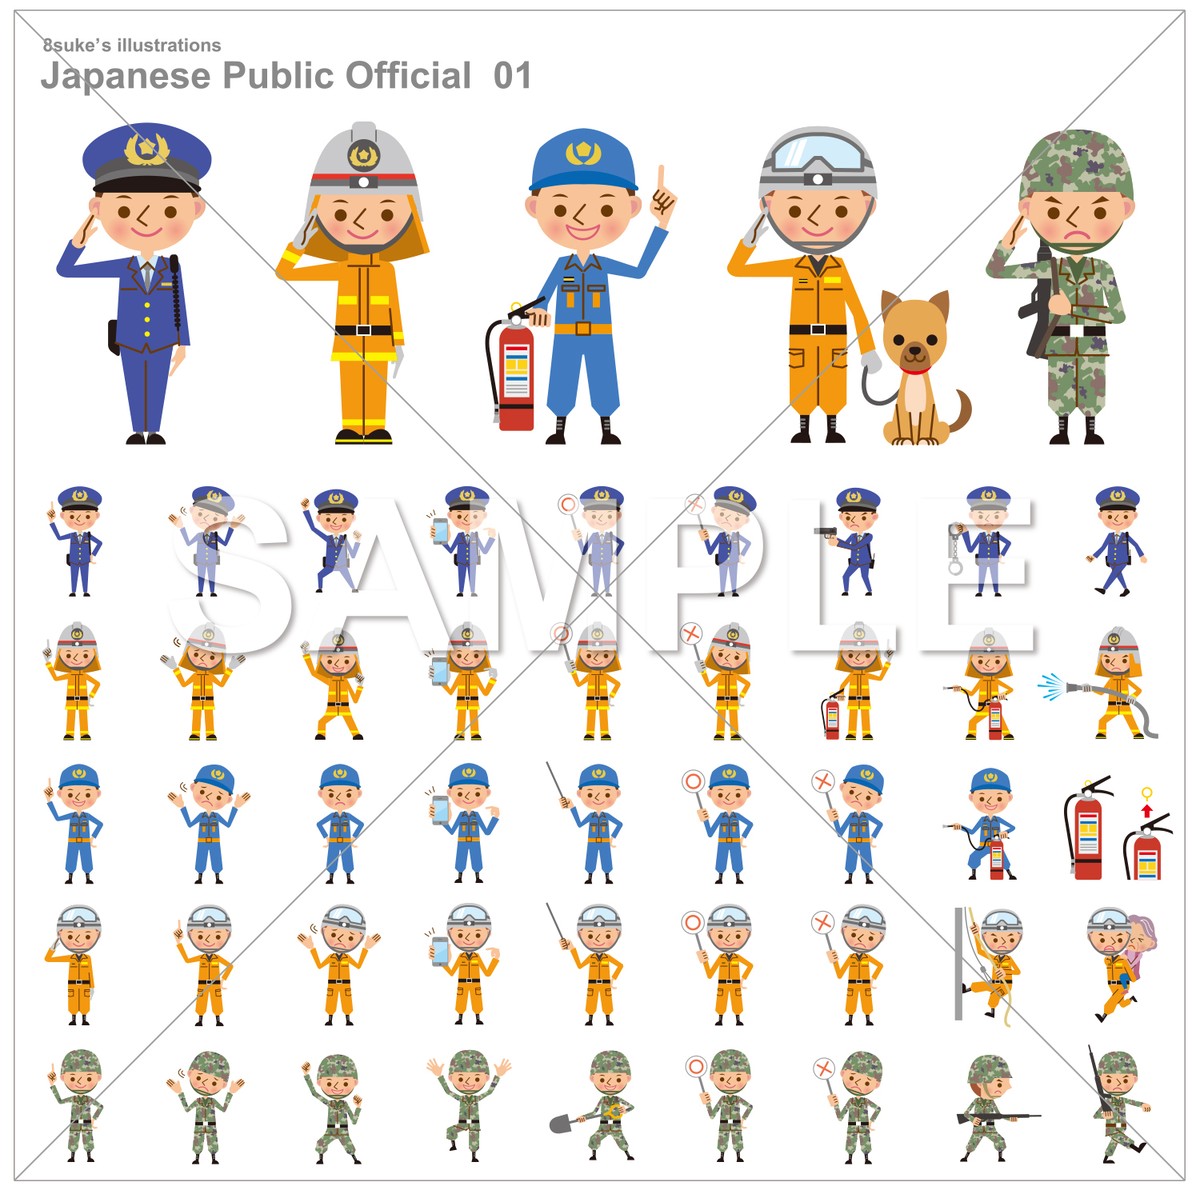 イラスト素材 警察官 消防士 自衛官のポーズセット ベクター Jpg Png Cd R版 8sukeの人物イラスト屋 かわいいベクター素材のダウンロード販売